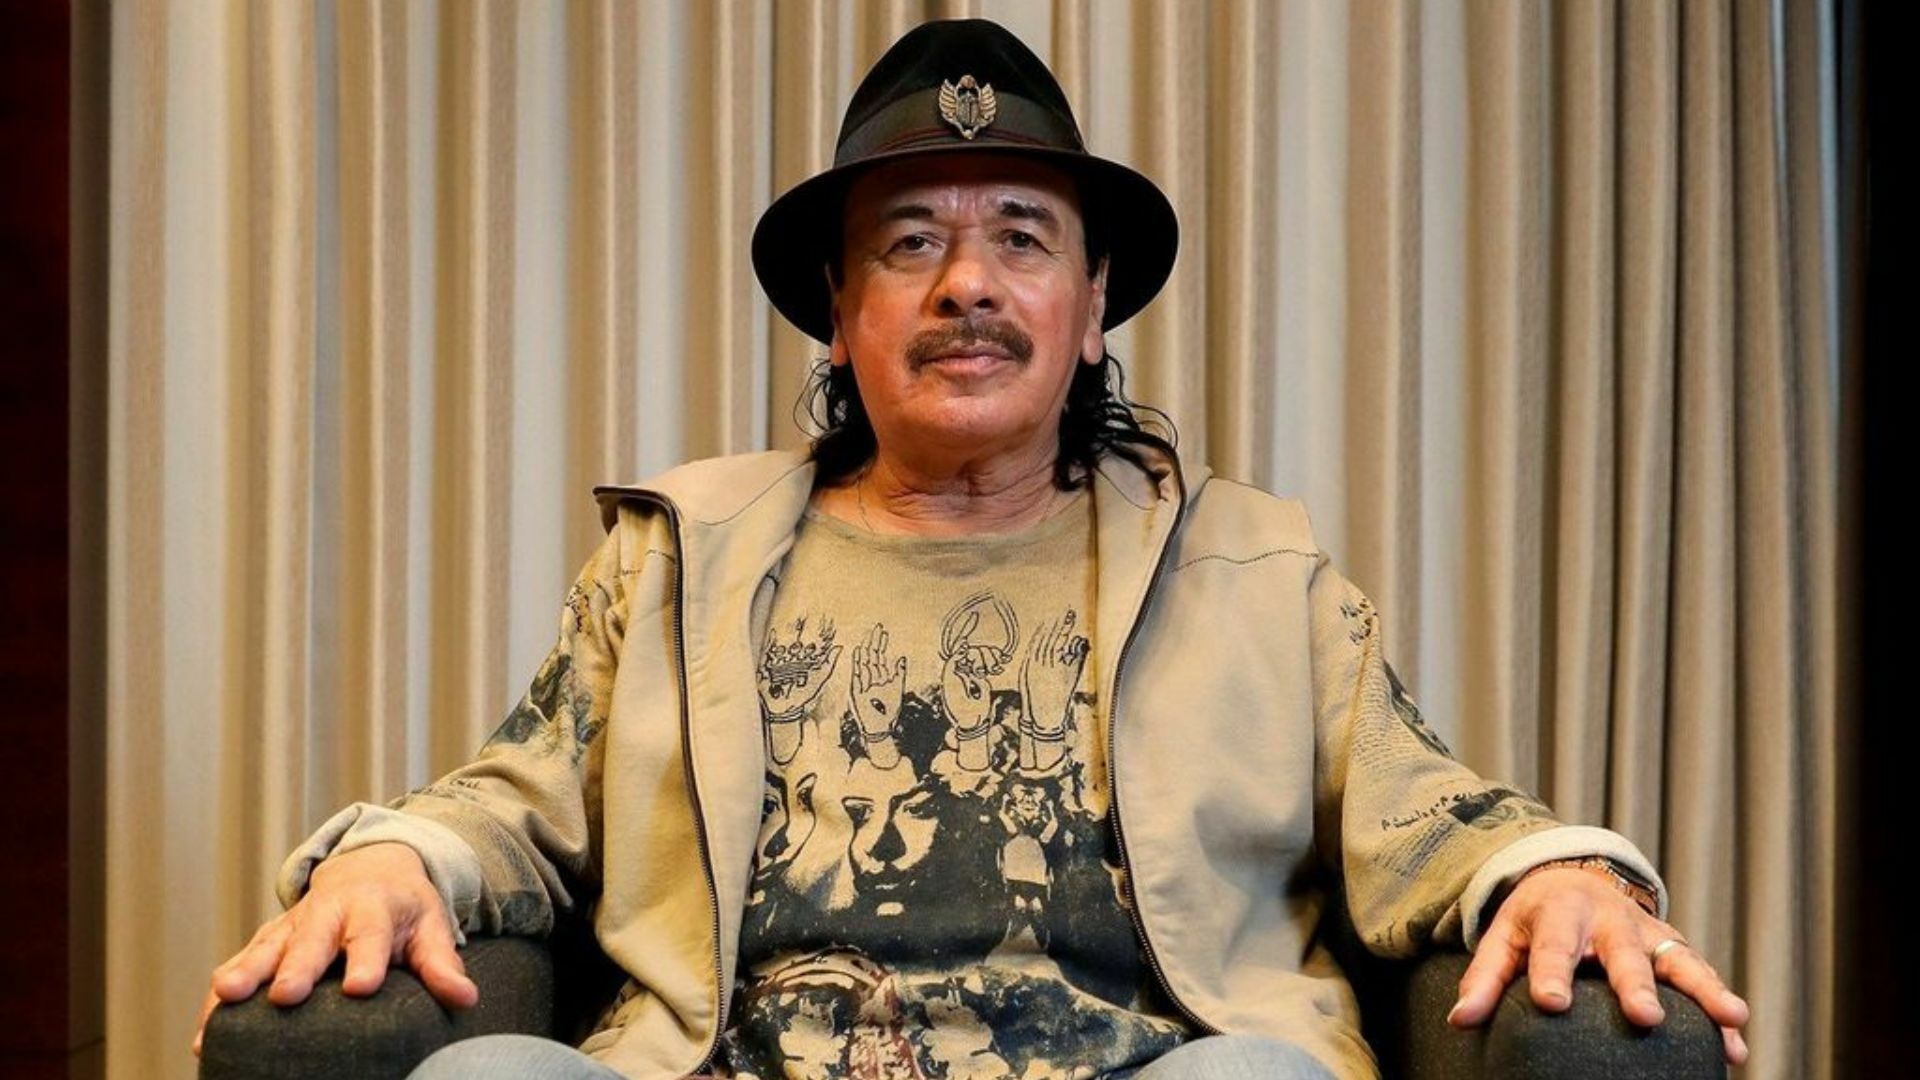 Carlos Santana ofrece disculpas a la comunidad trans por sus comentarios 'insensibles'